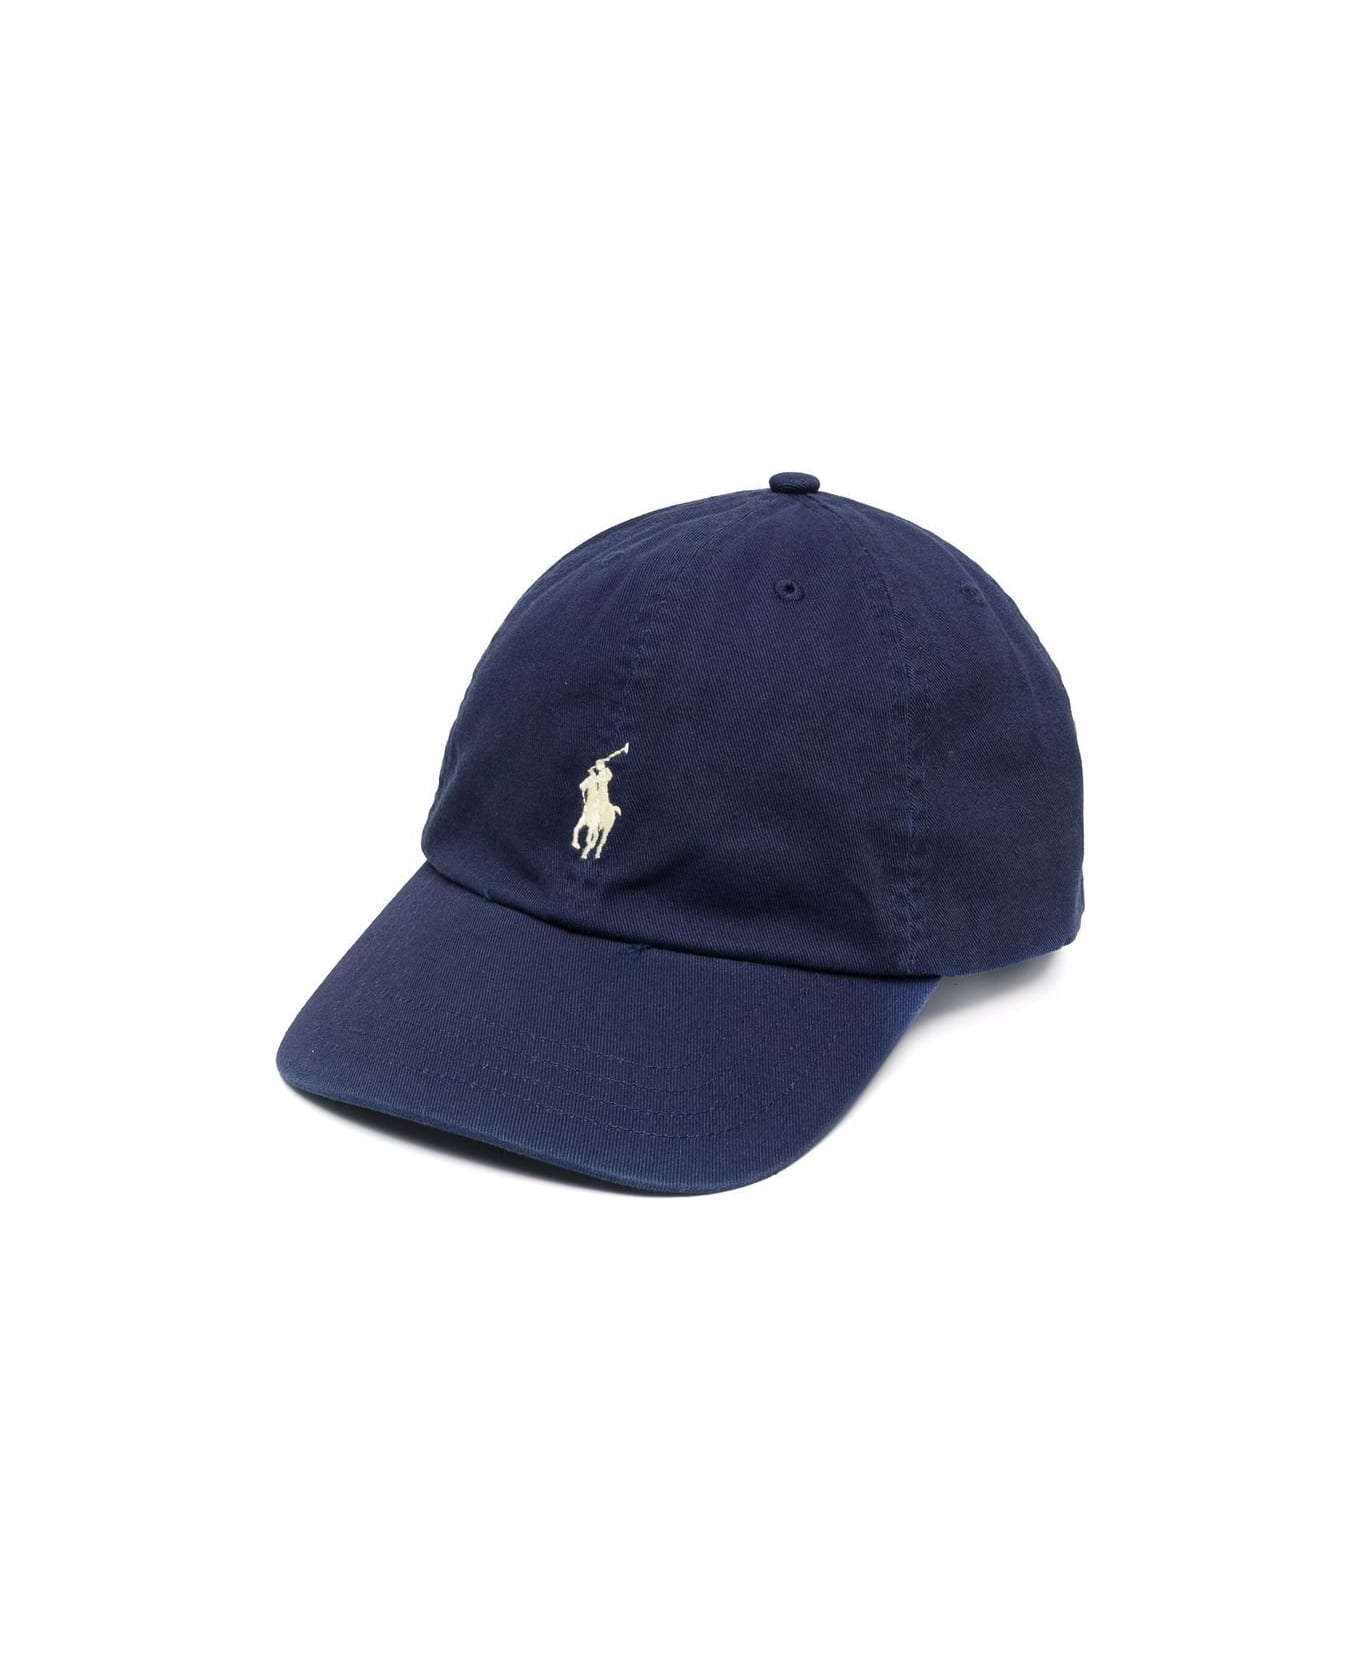 Polo Ralph Lauren Clsc Cap Apparel Accessories Hat - Newport Navy アクセサリー＆ギフト